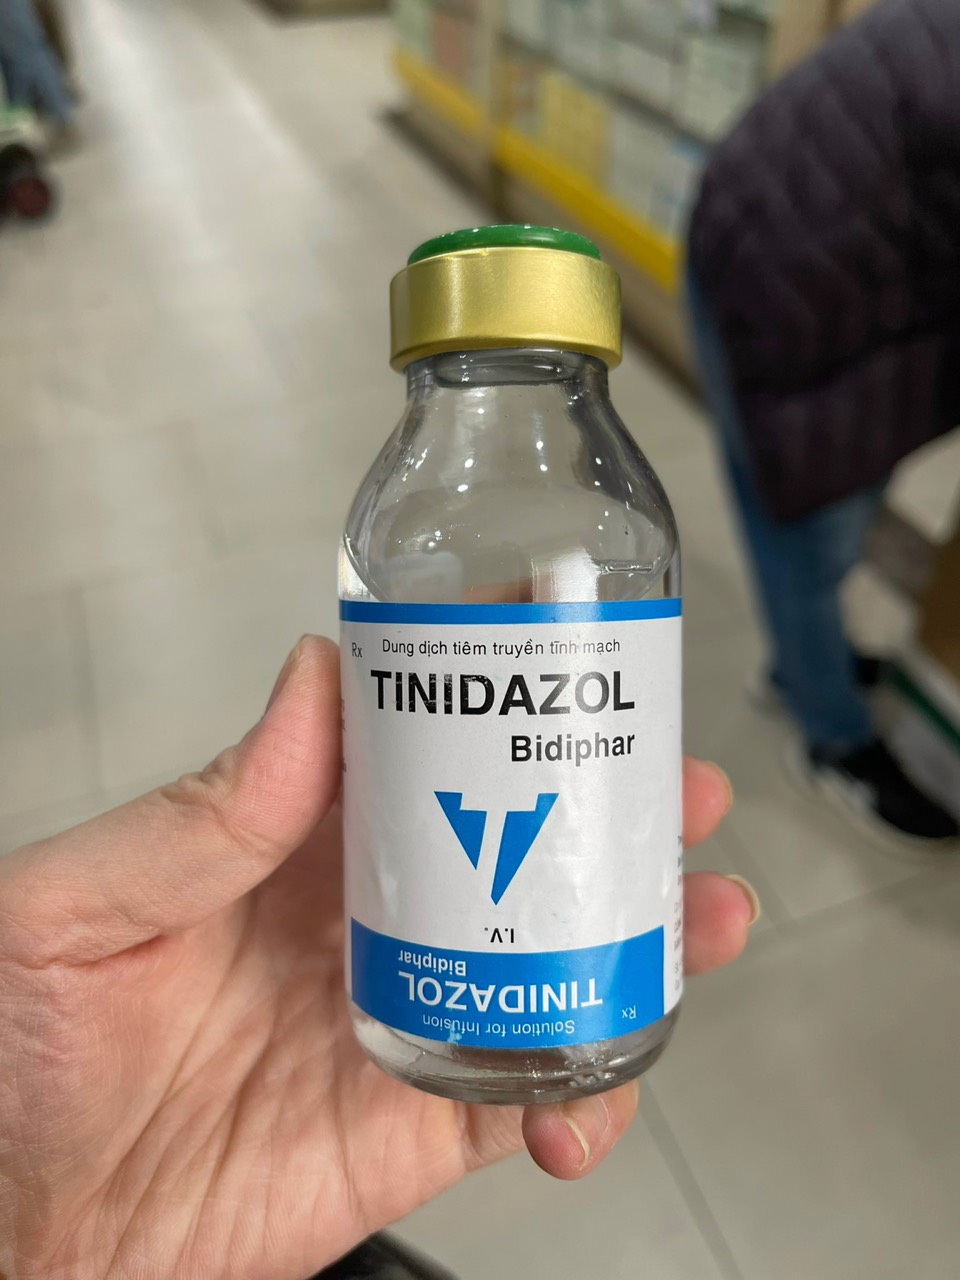 Tinidazol Bidiphar